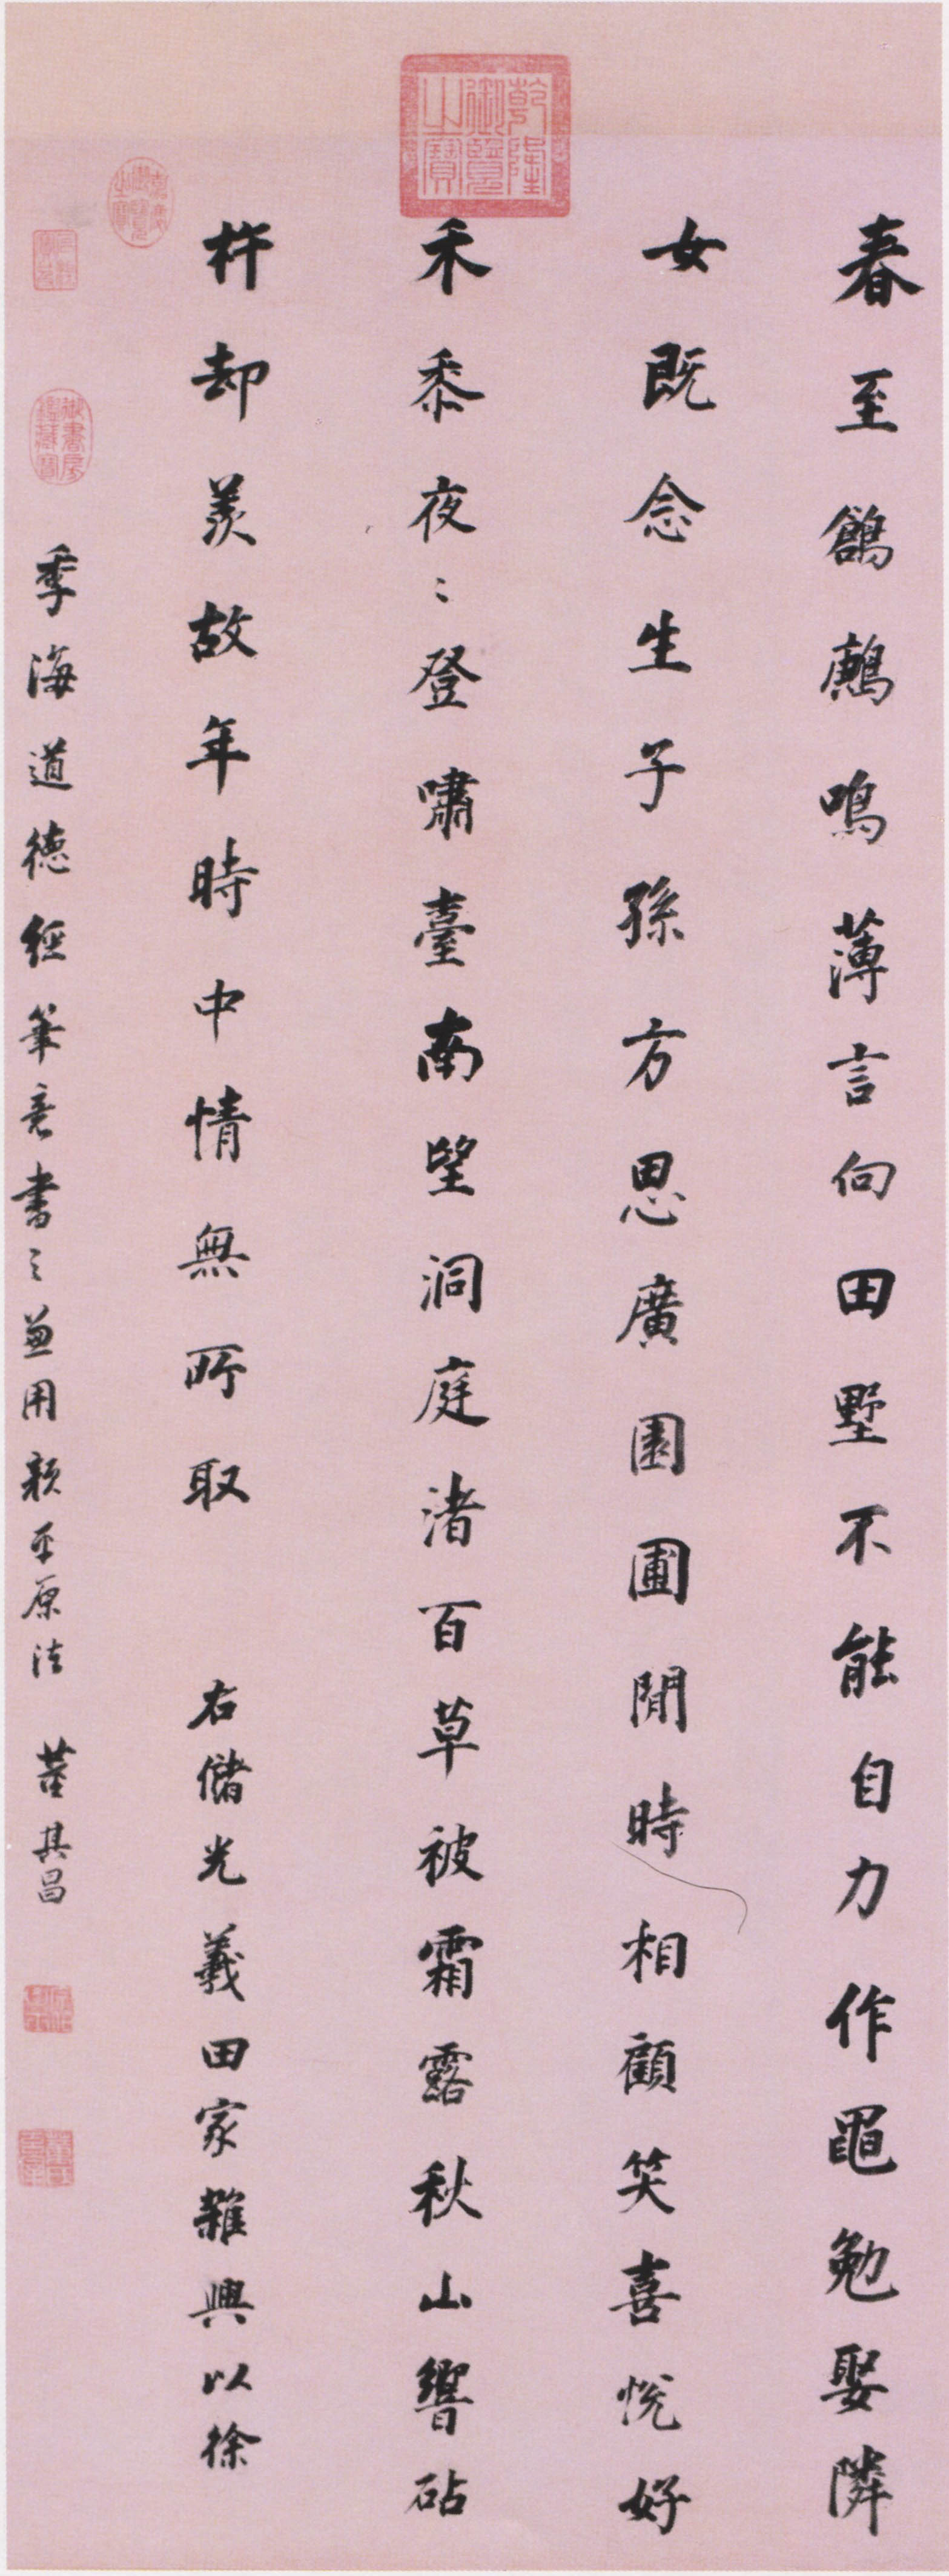 董其昌《储光义五言诗轴》-北京故宫博物院藏(图1)